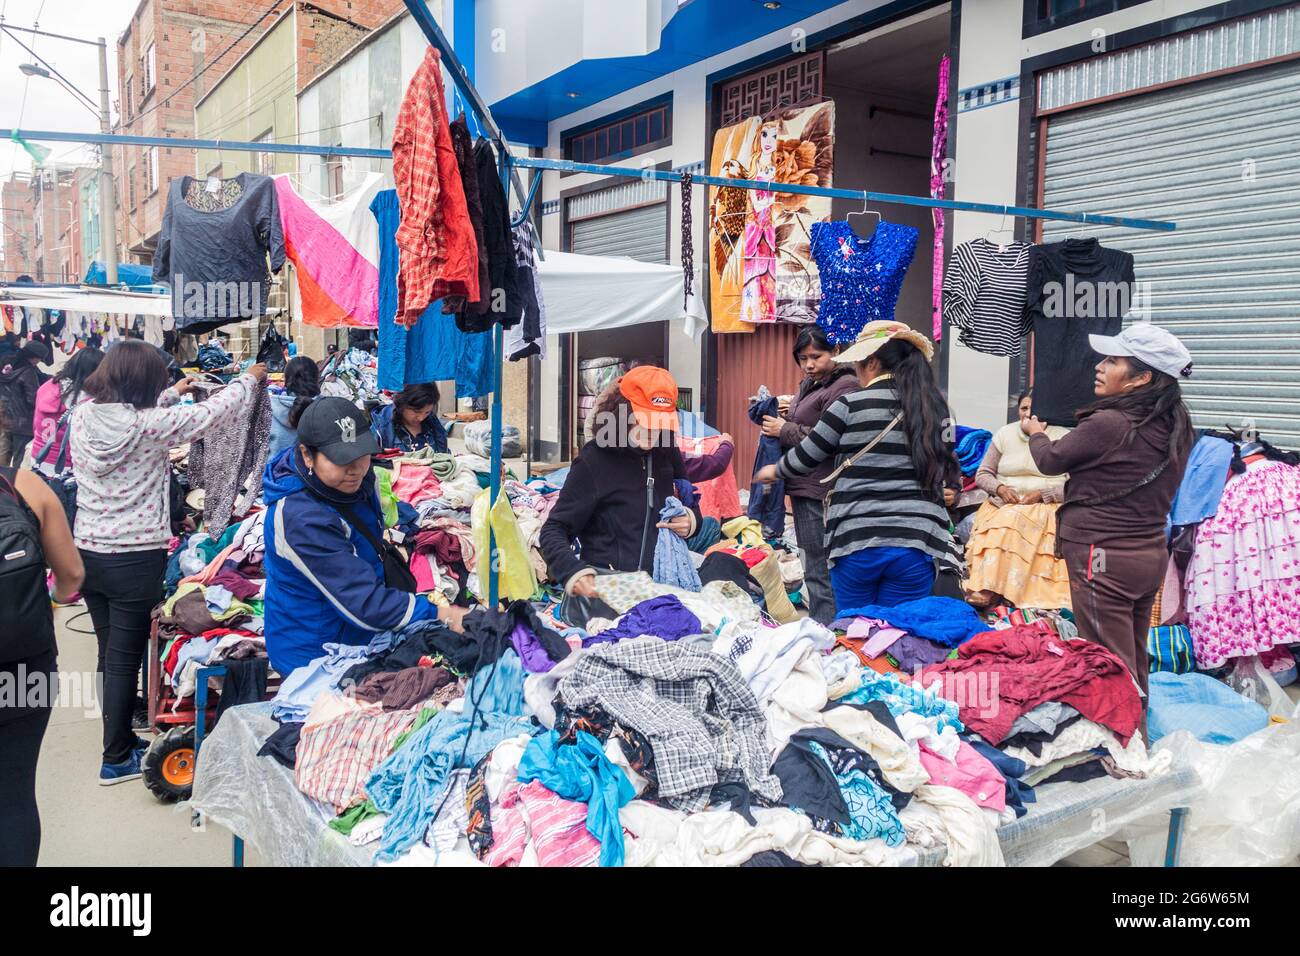 EL Alto, BOLIVIE - 23 AVRIL 2015 : les gens font leurs courses sur un marché à El Alto, en Bolivie. Banque D'Images